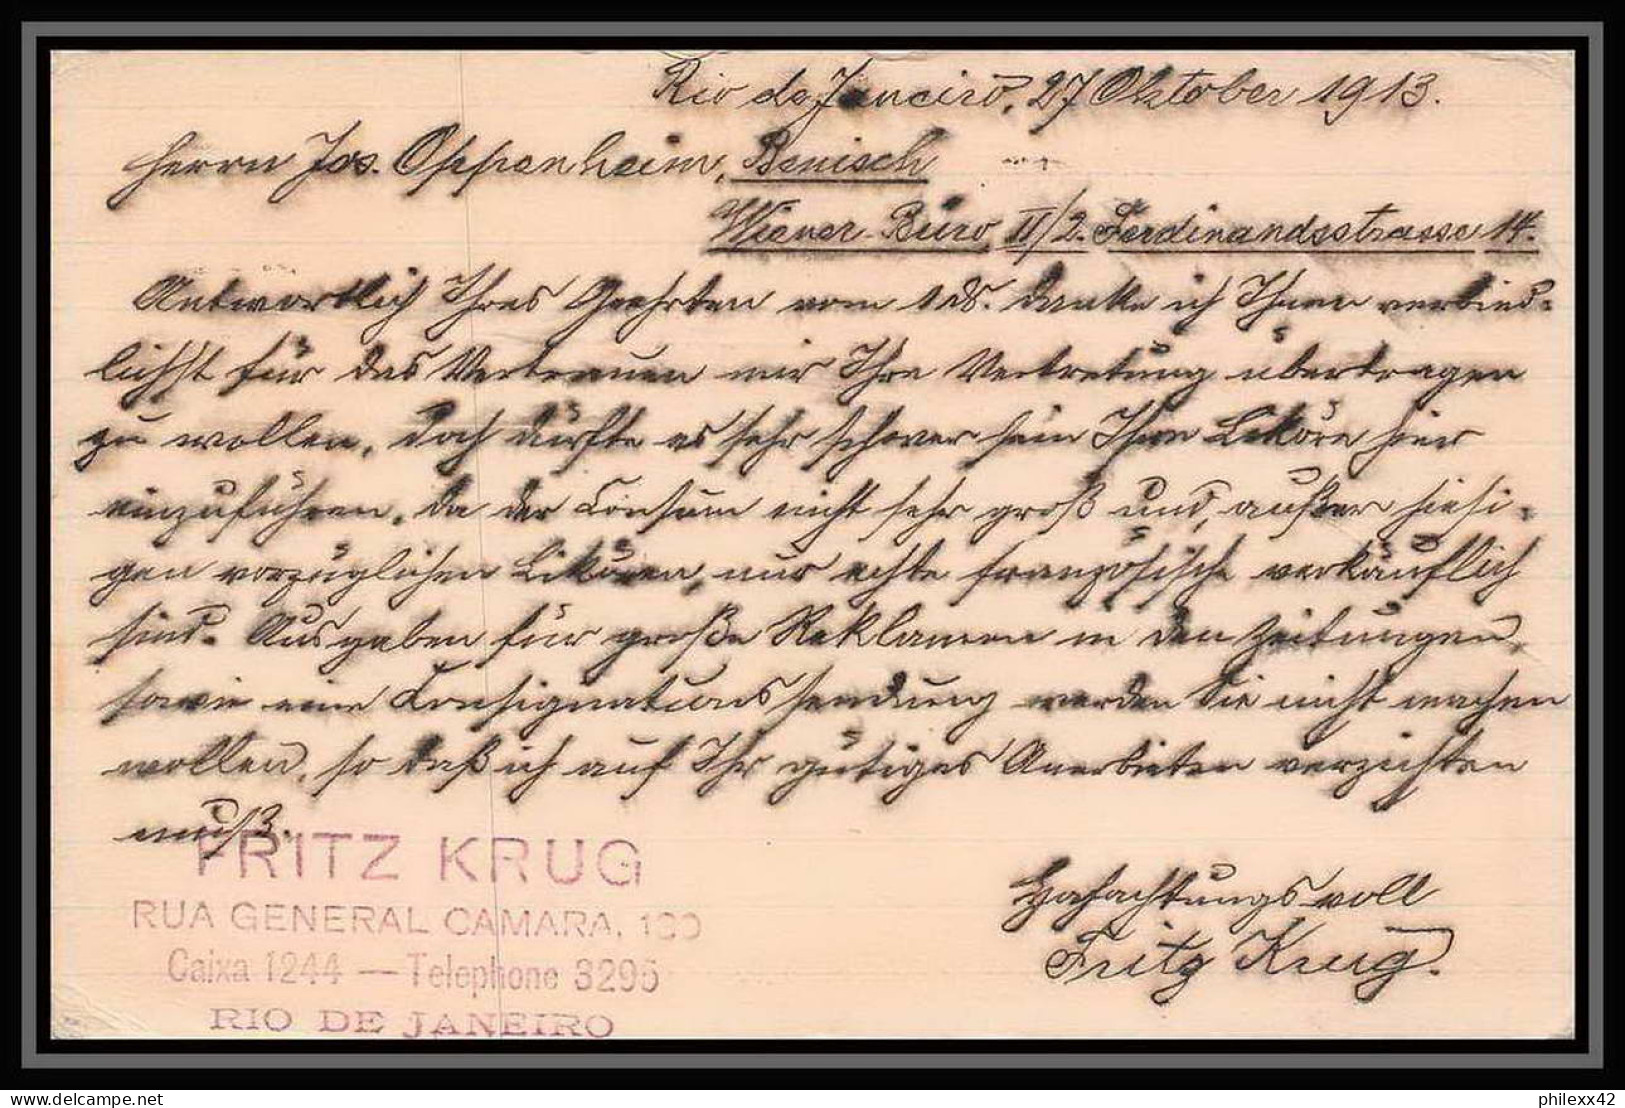 4029/ Brésil (brazil) Entier Stationery Carte Postale (postcard) N°33 Pour Wien Autriche (Austria) 1913 - Postwaardestukken